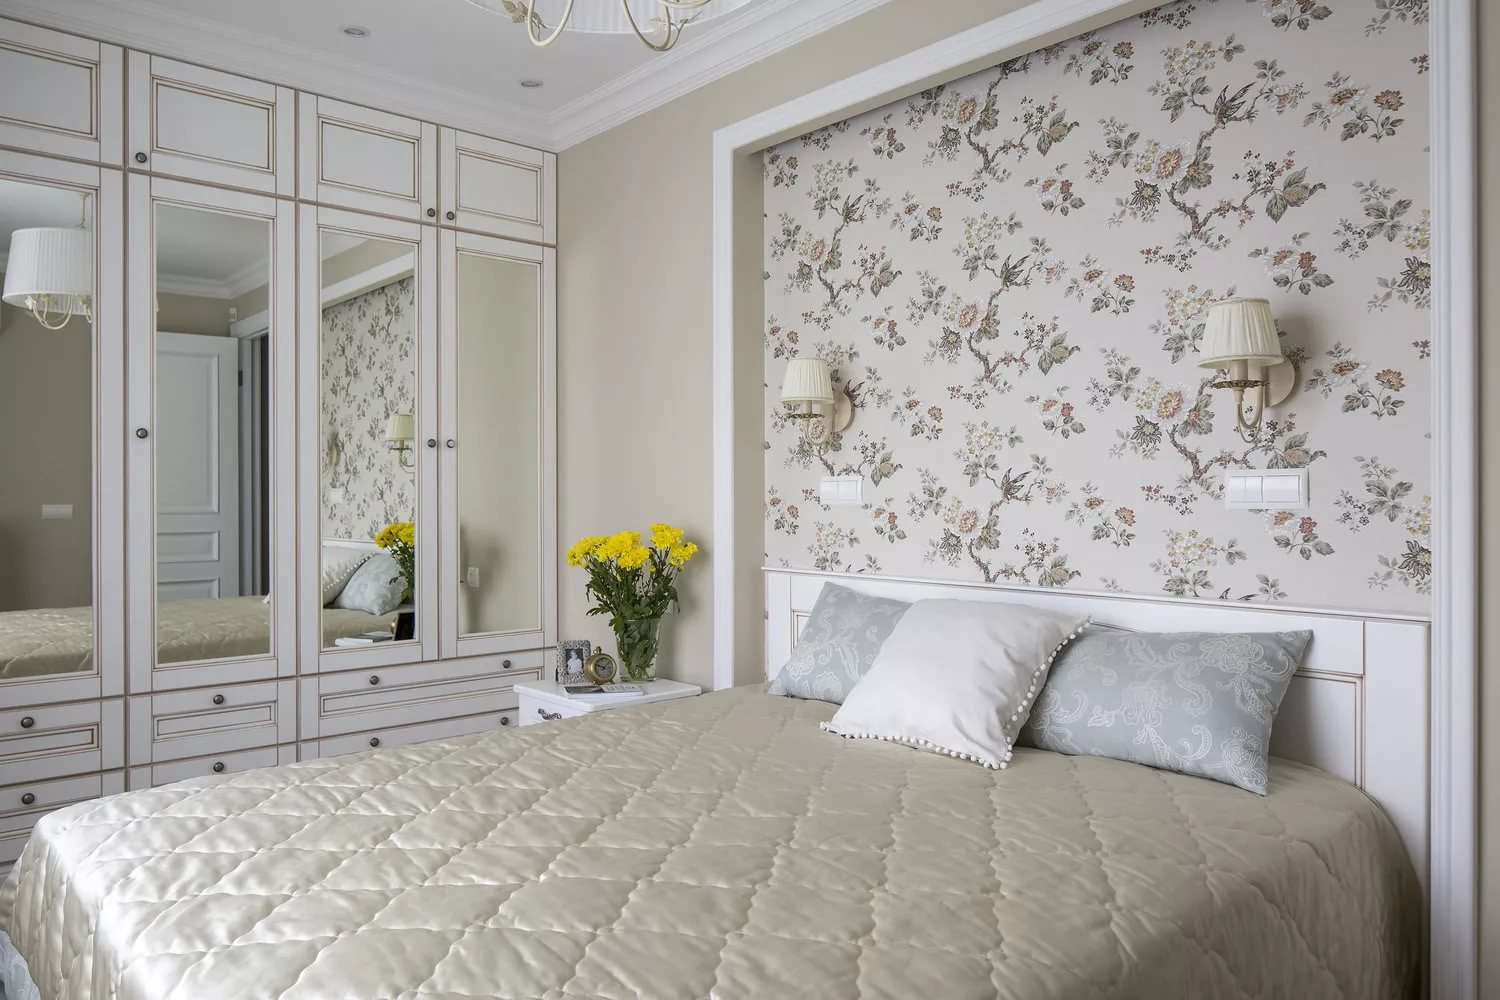 Фотообои в спальню 114 фото над кроватью и на стенах примеры дизайна интерьера маленькой комнаты розы какие выбрать по фэн-шуй